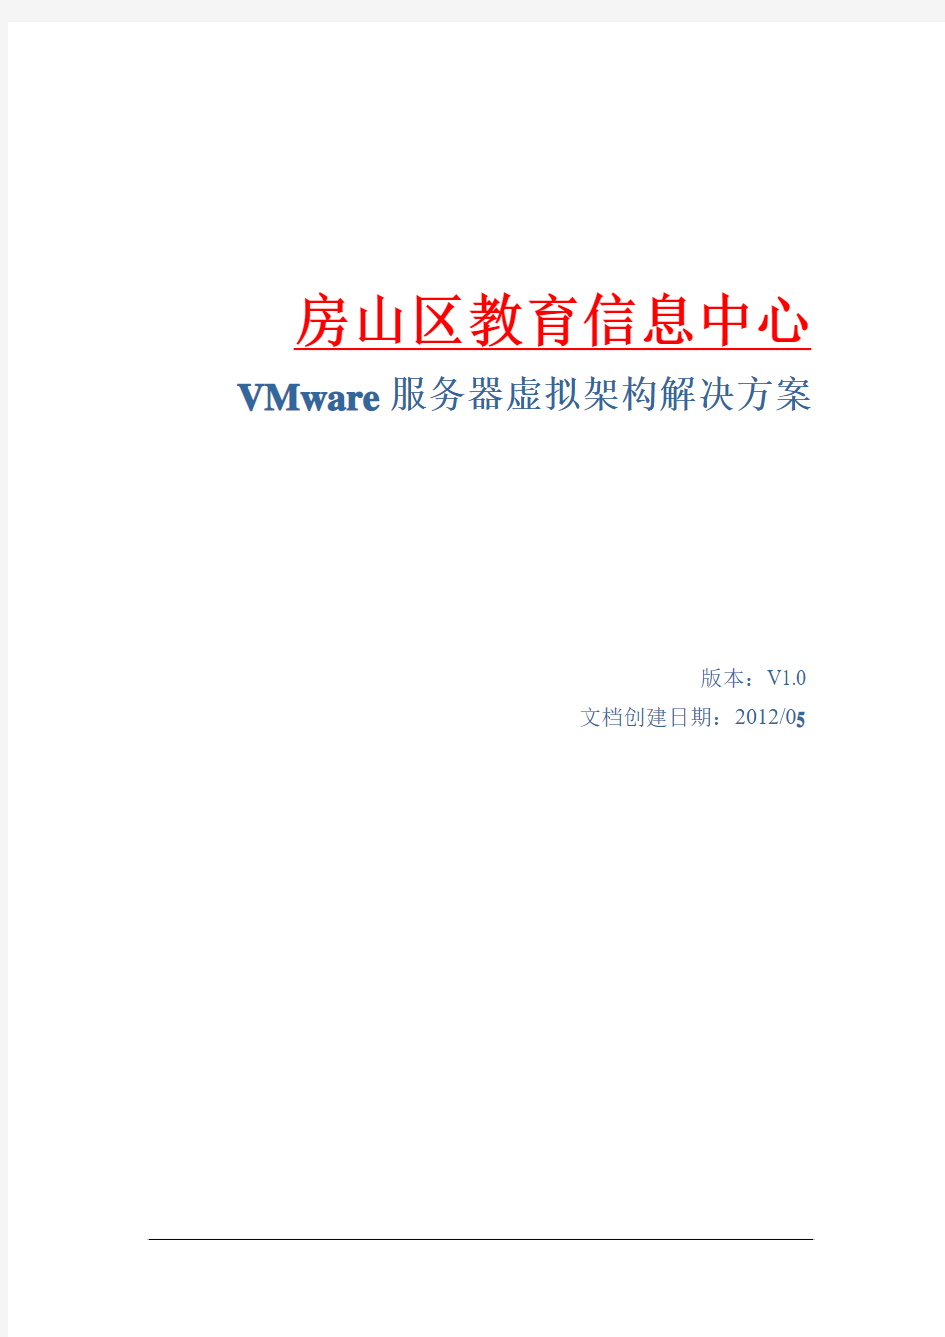 VMware虚拟架构解决方案建议书 2012.5.2